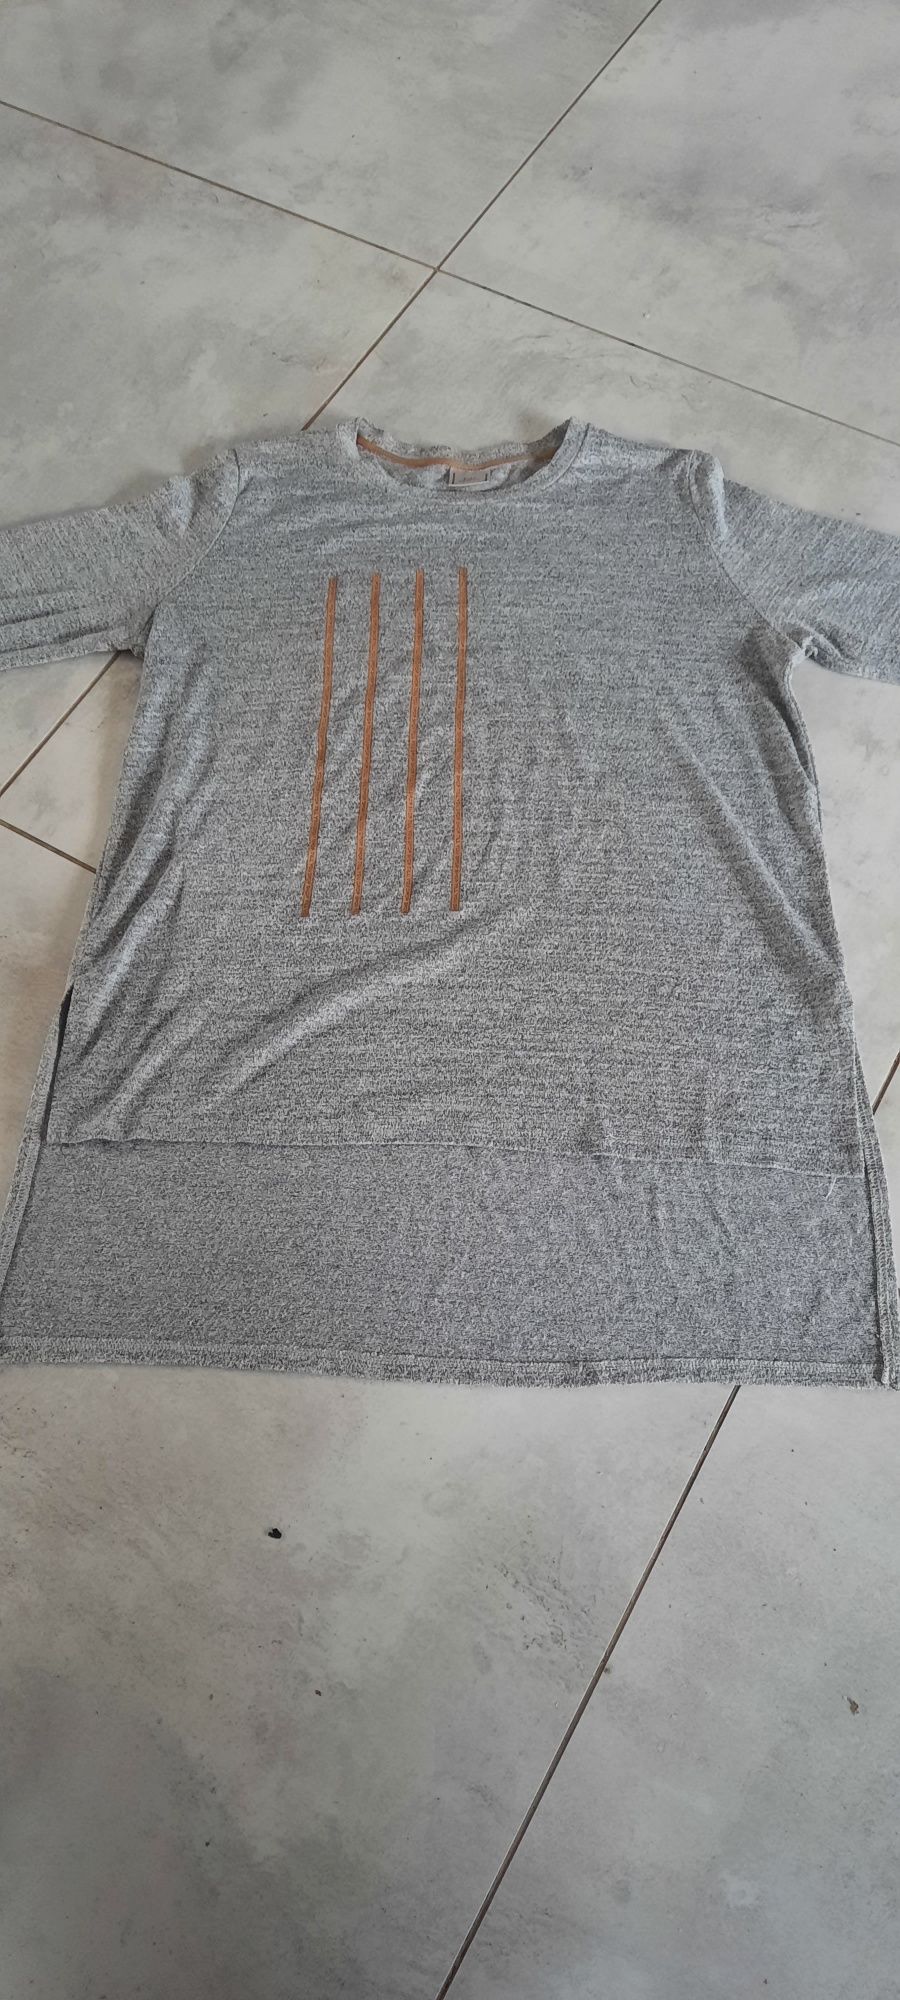 Koszulka cienki sweterek szary z dłuższym tyłem rozmiar M/38 Zara